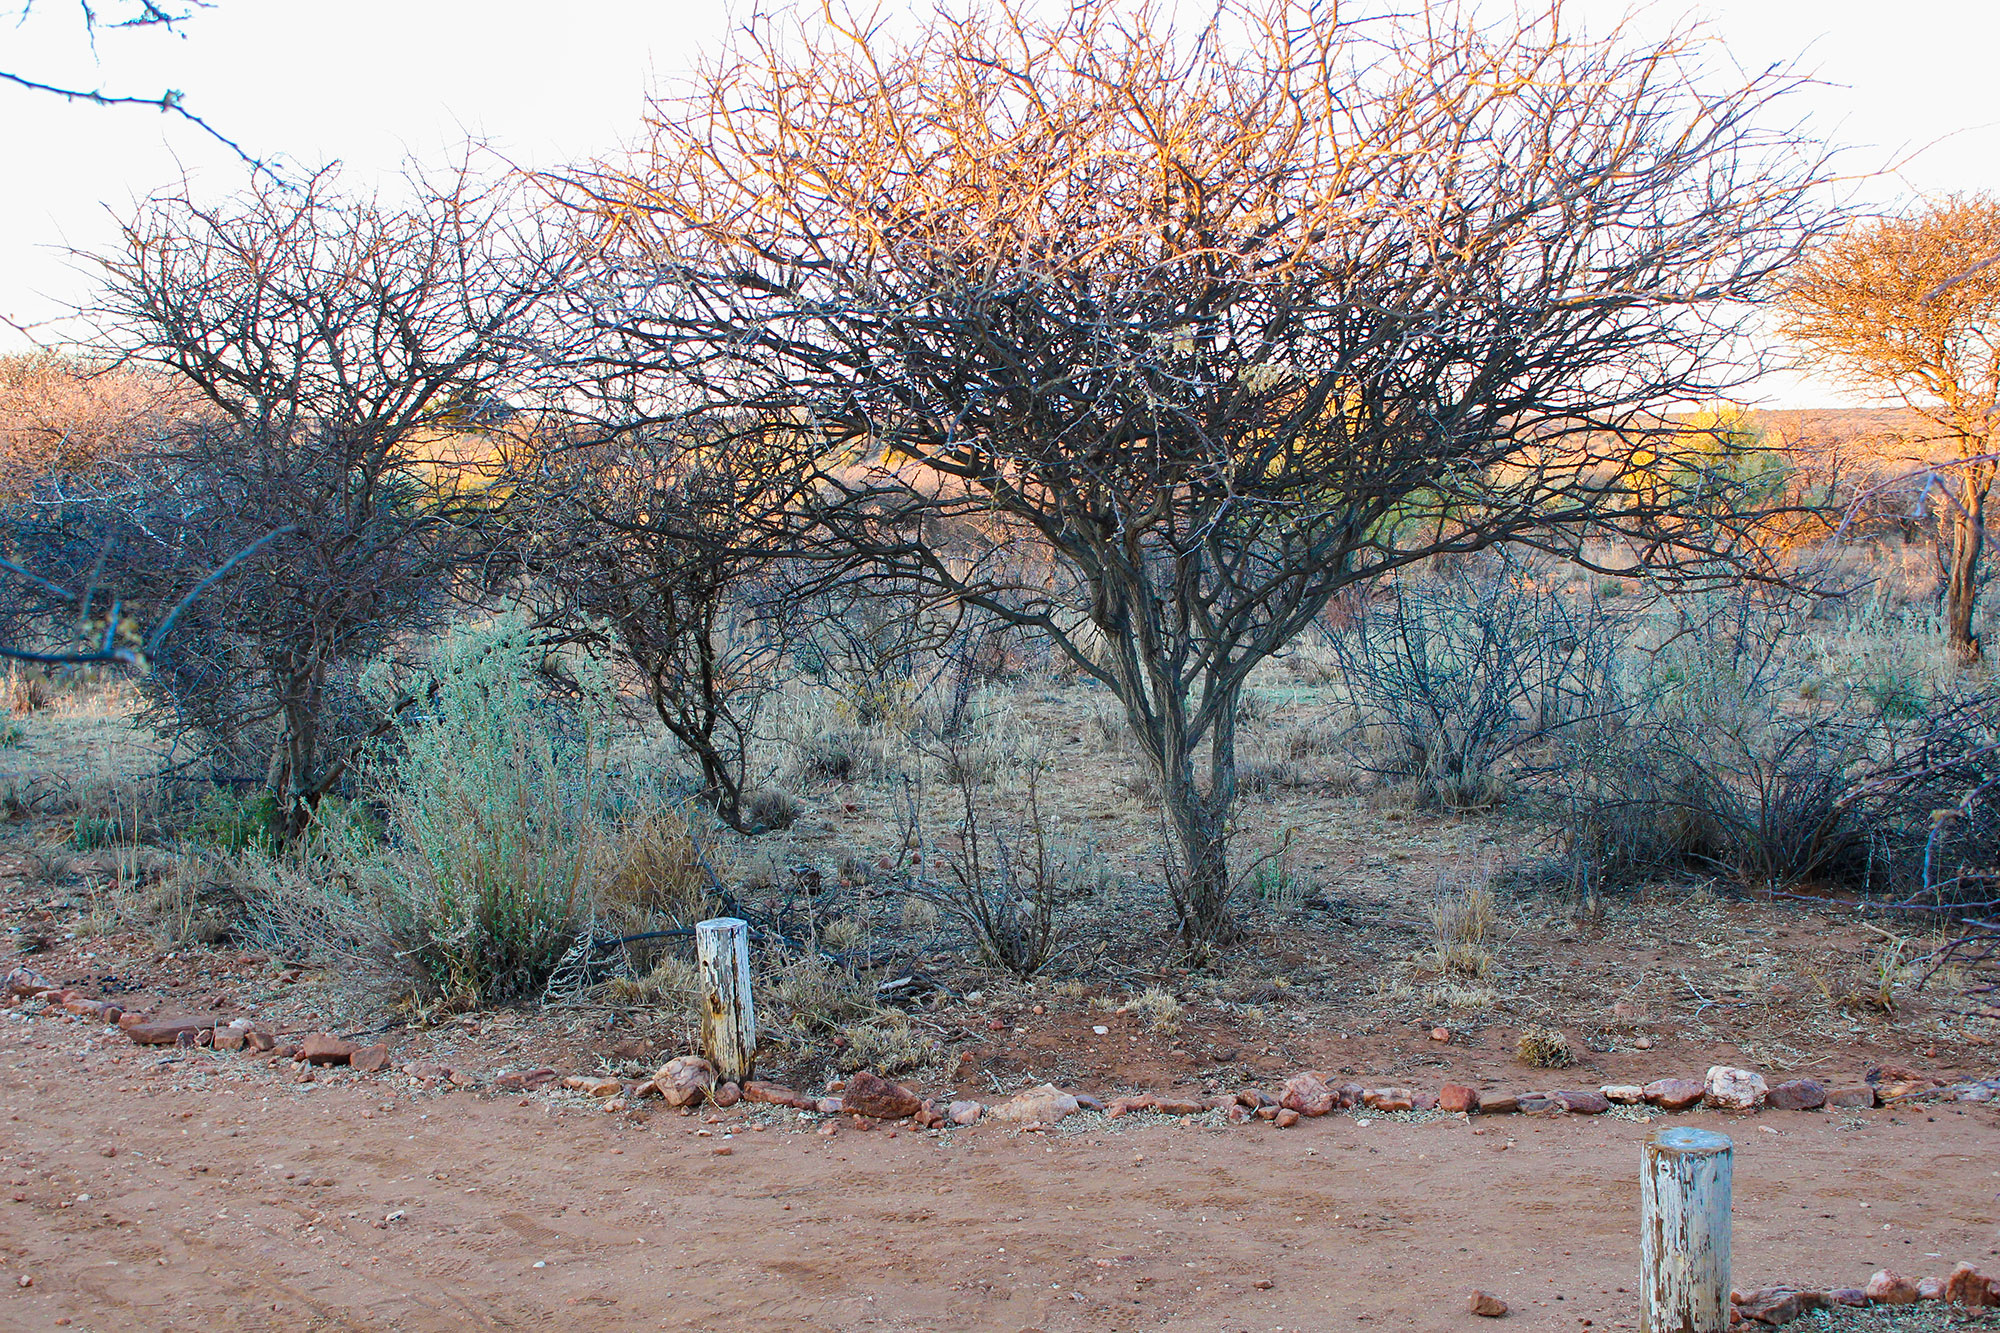 Naankuse Wildlife Sanctuary Namibia